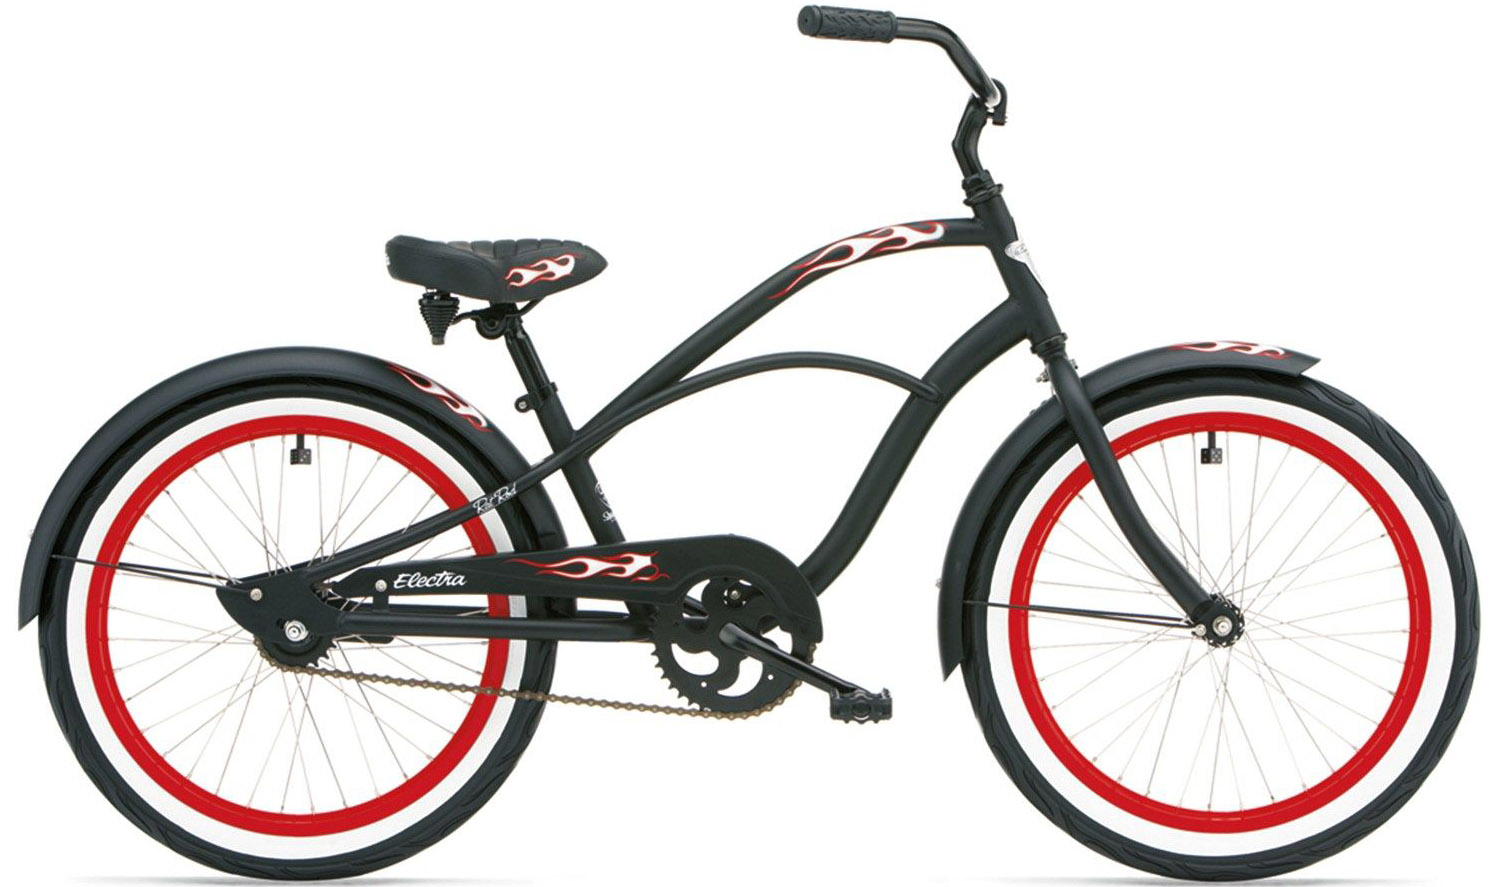  Велосипед Electra Rat Rod 1 2020